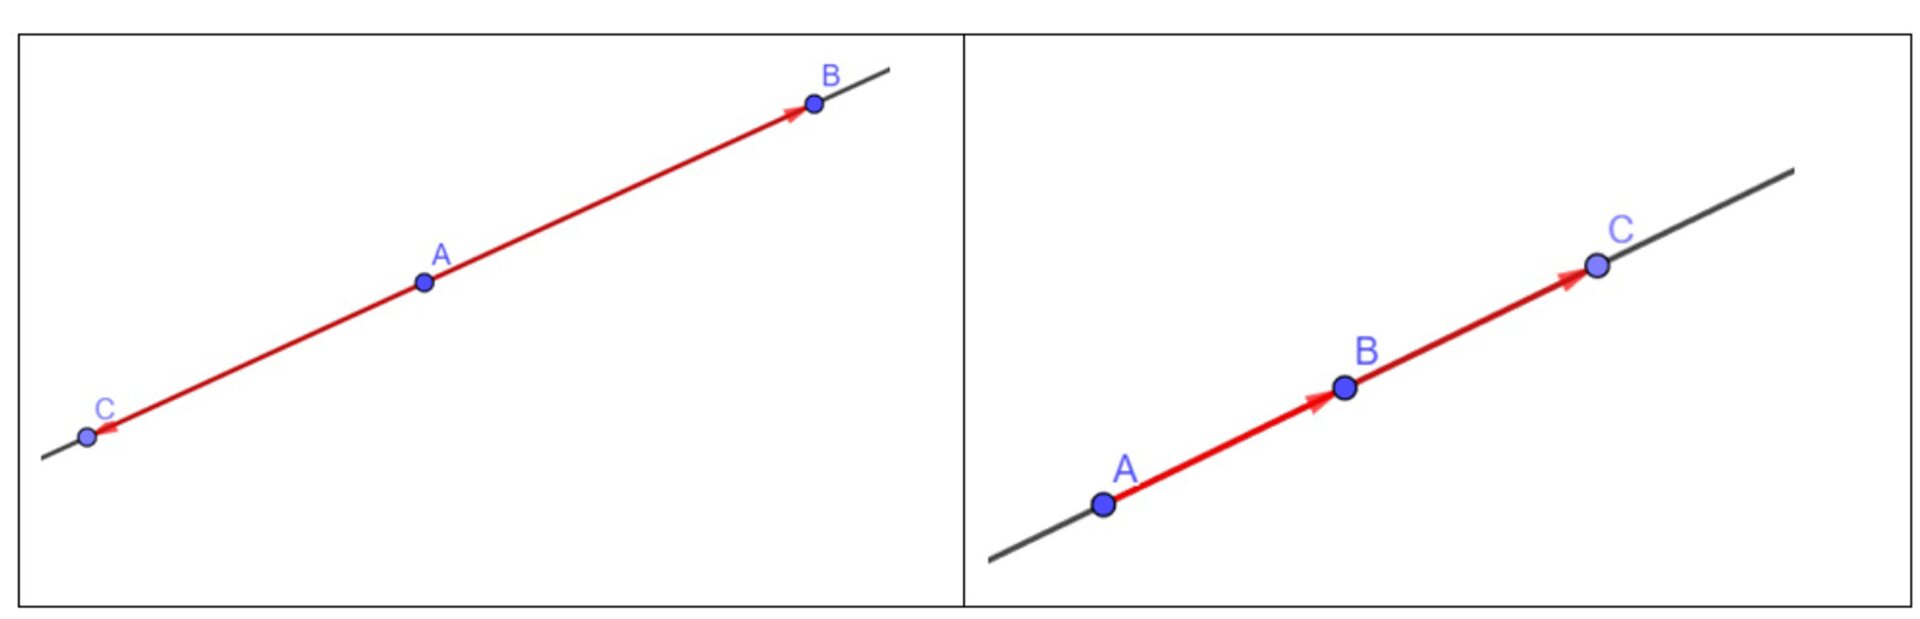 Ilustracja przedstawia dwie proste obok siebie. Pierwsza prosta. Zaznaczono na niej kolejno punkty od lewej: C, A, B. Na prostej zaznaczono dwa wektory: AB→ oraz AC→. Druga prosta. Zaznaczono na niej kolejno punkty od lewej: A, B, C. Zaznaczono wzdłuż prostej dwa wektory: AB→ oraz BC→.